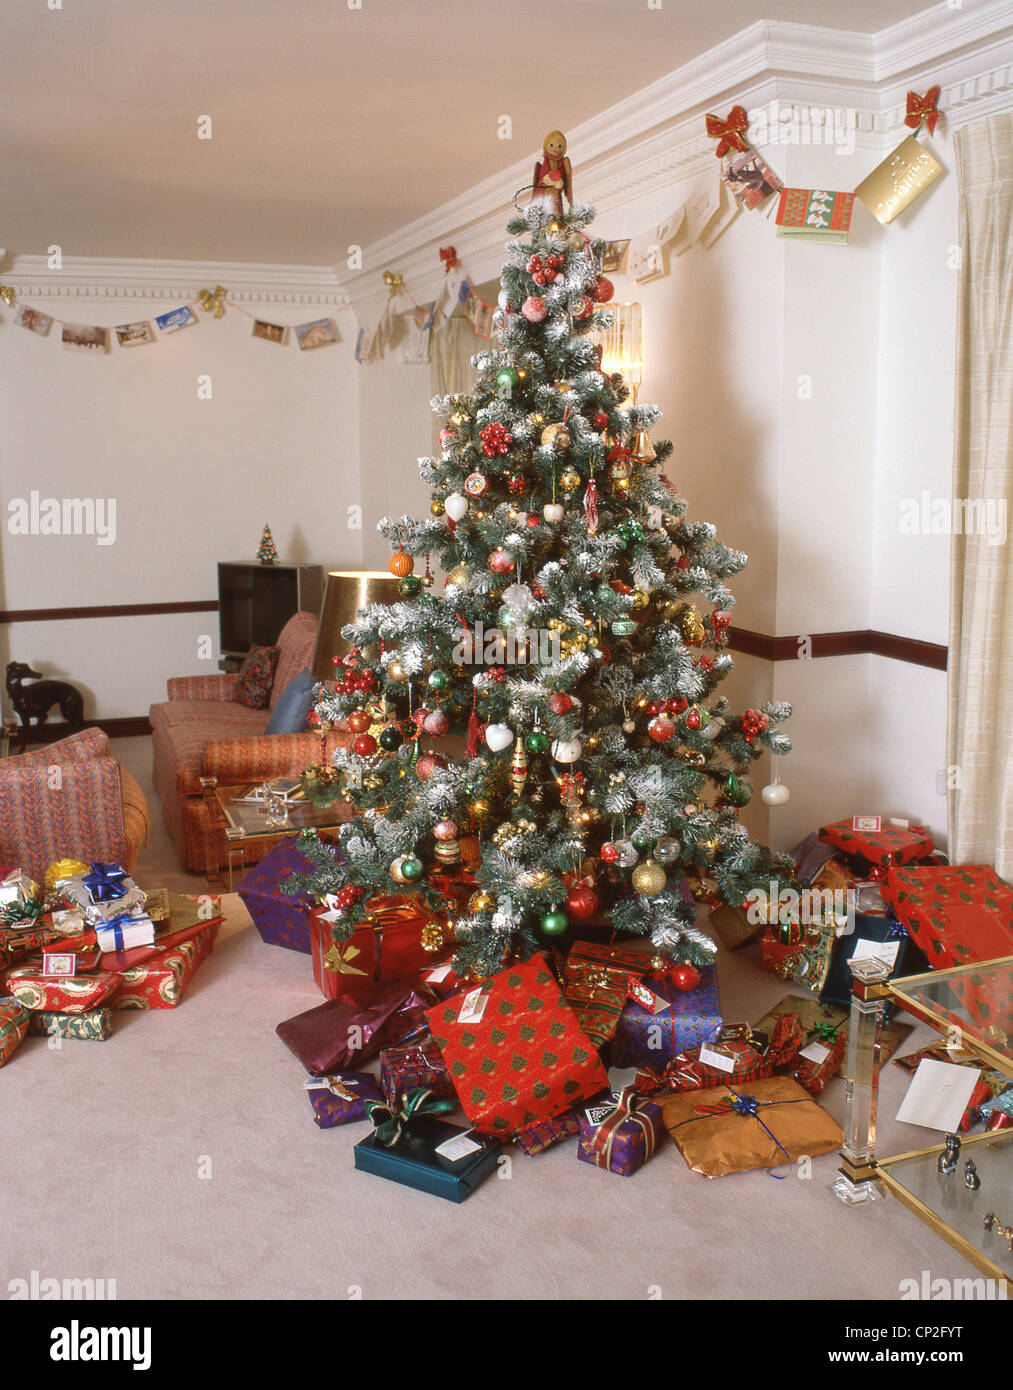 Weihnachtsbaum im Wohnzimmer des Hauses, Surrey, England, Vereinigtes Königreich Stockfoto